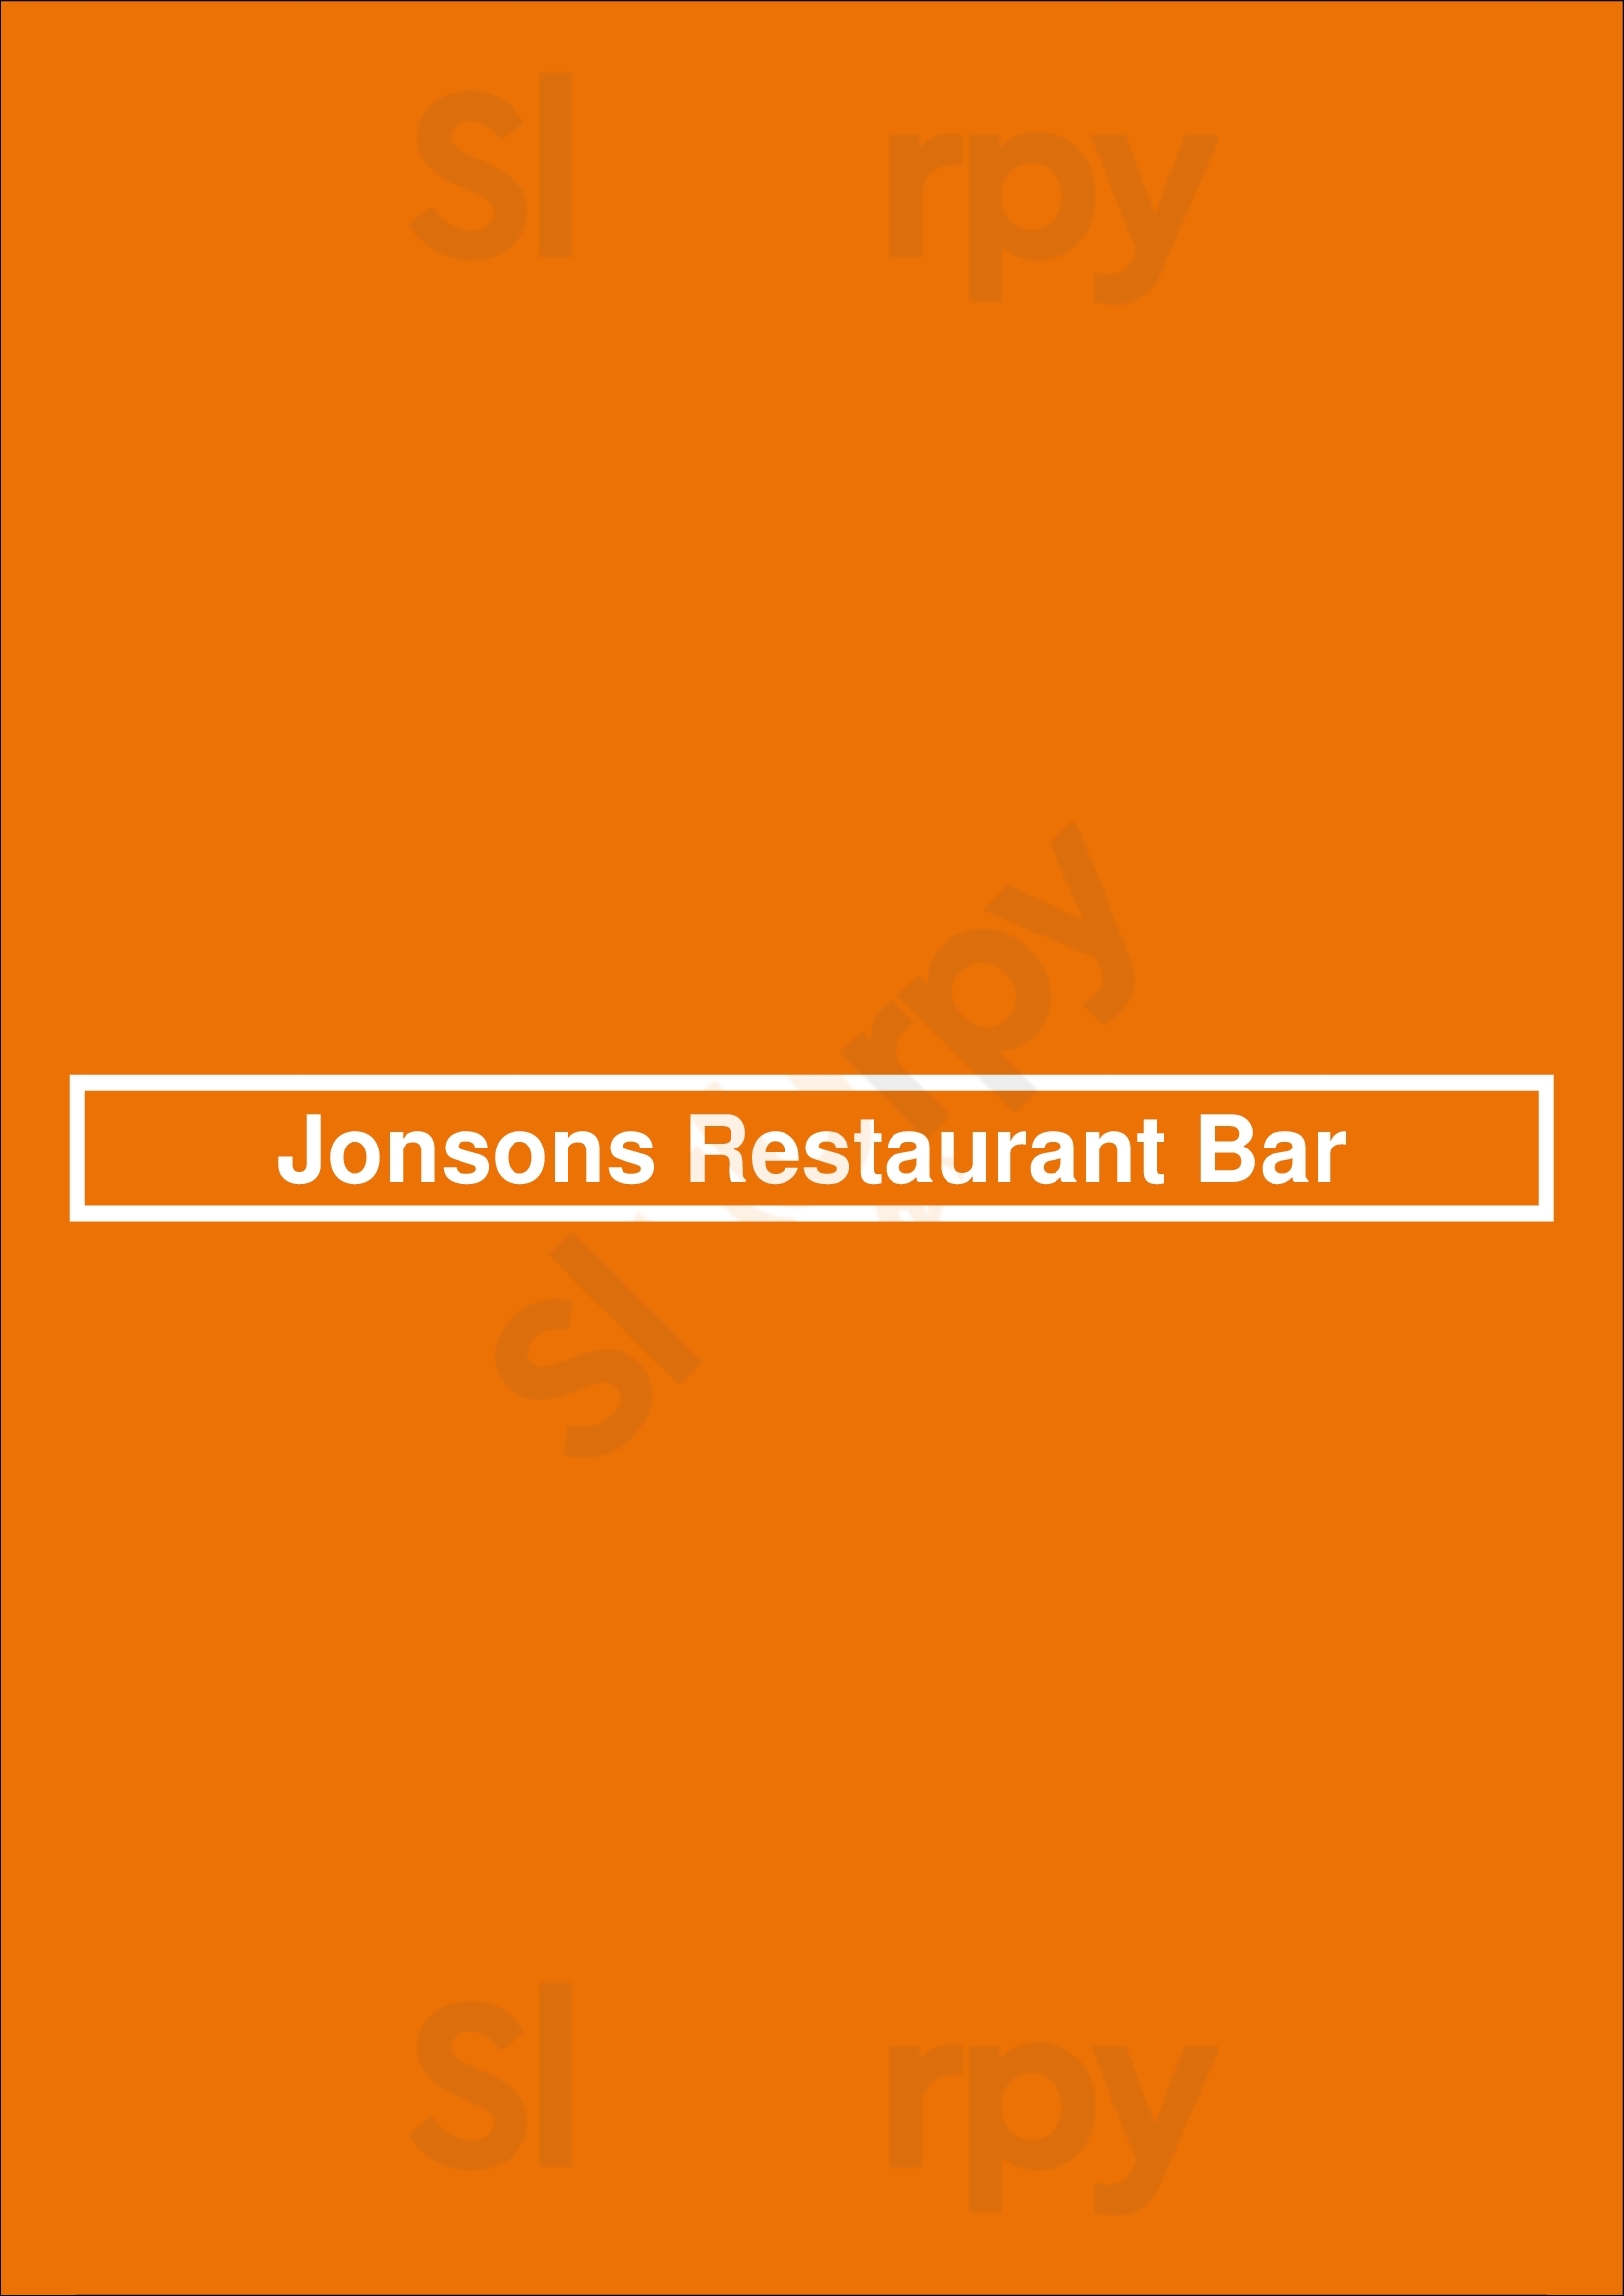 Jonsons Restaurant & Bar Byron Bay Menu - 1